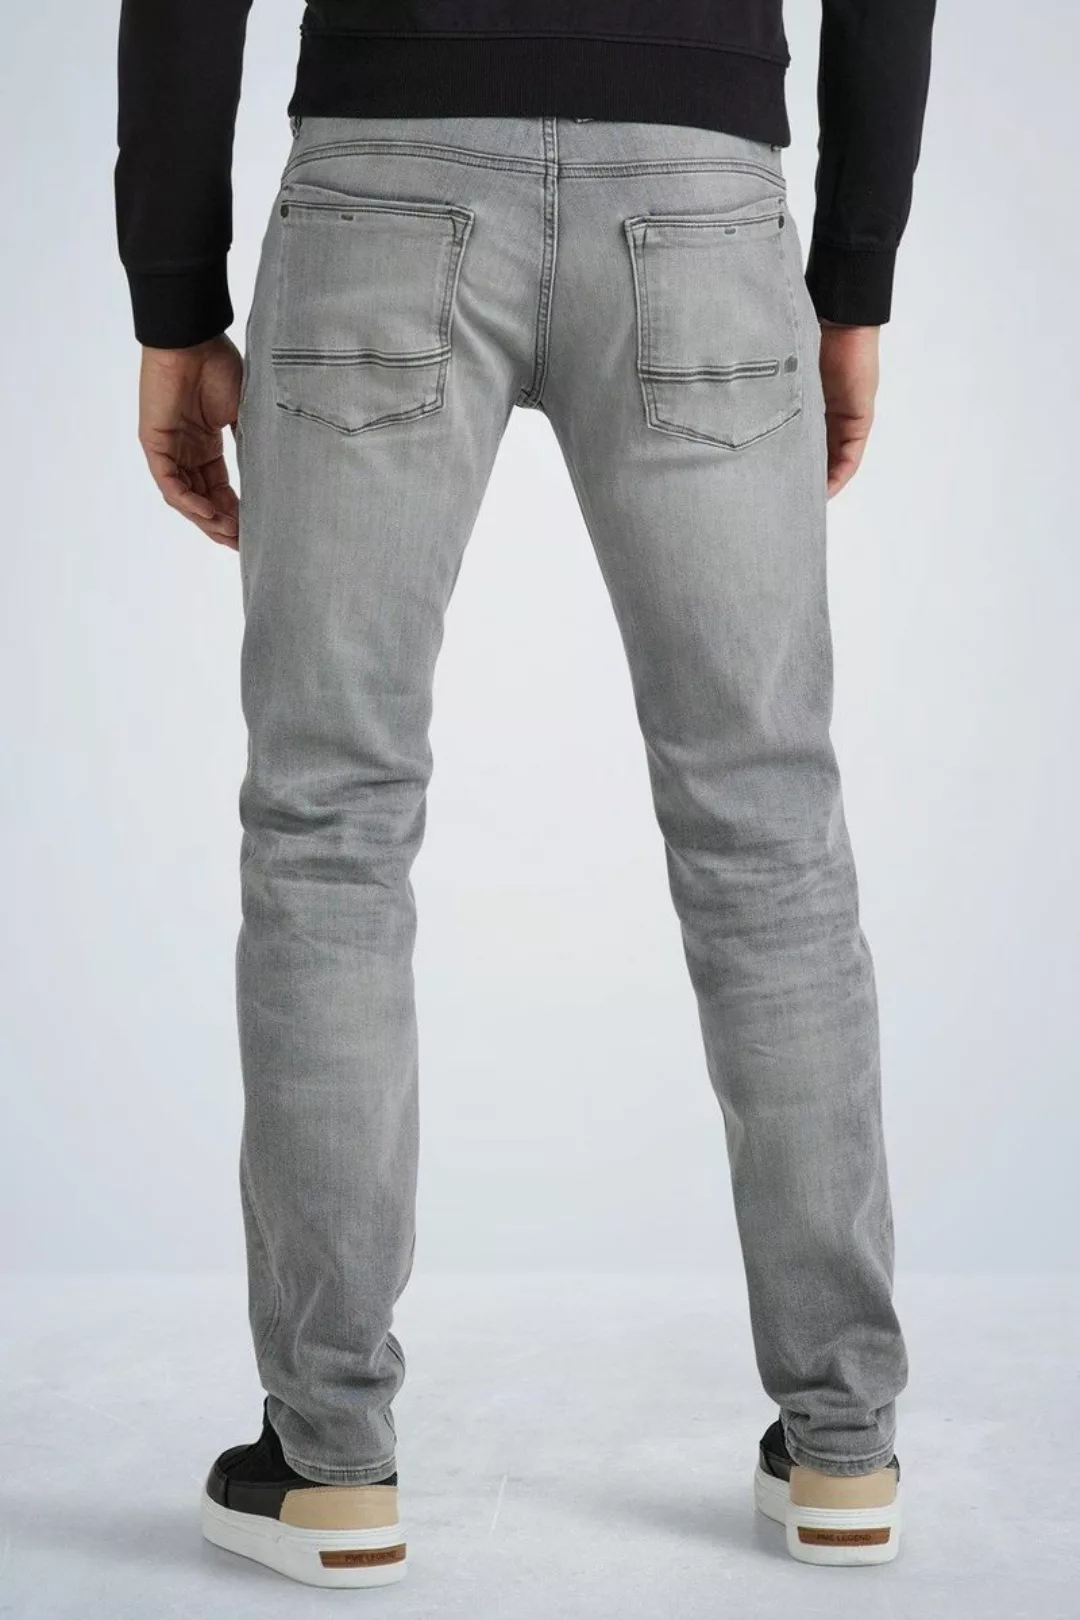 PME Legend Commander 3.0 Jeans Grau - Größe W 38 - L 32 günstig online kaufen